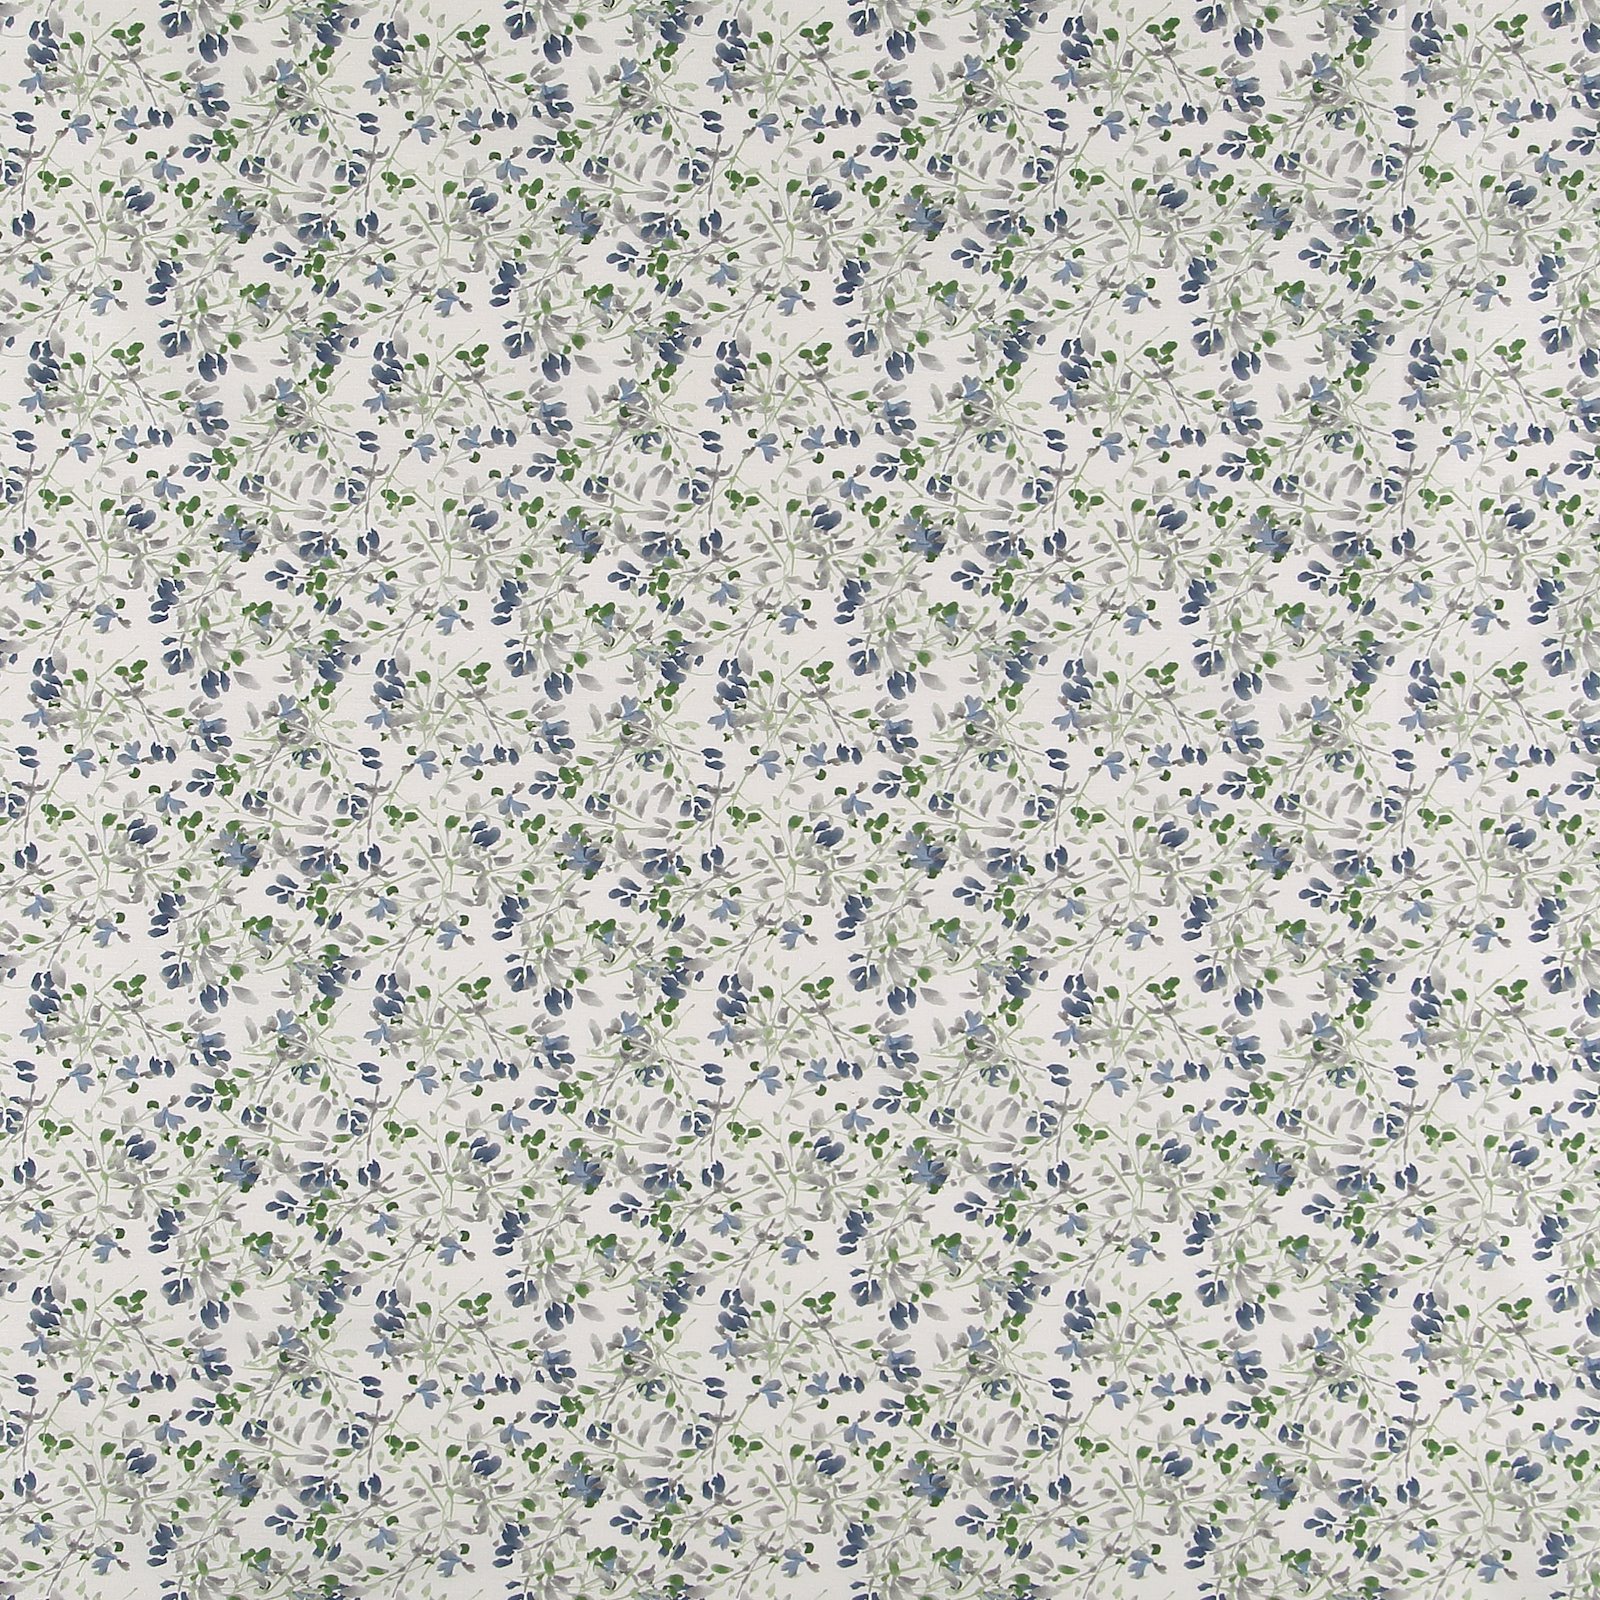 Gewebe, Weiß mit blau/grau/grünen Blumen 750370_pack_sp